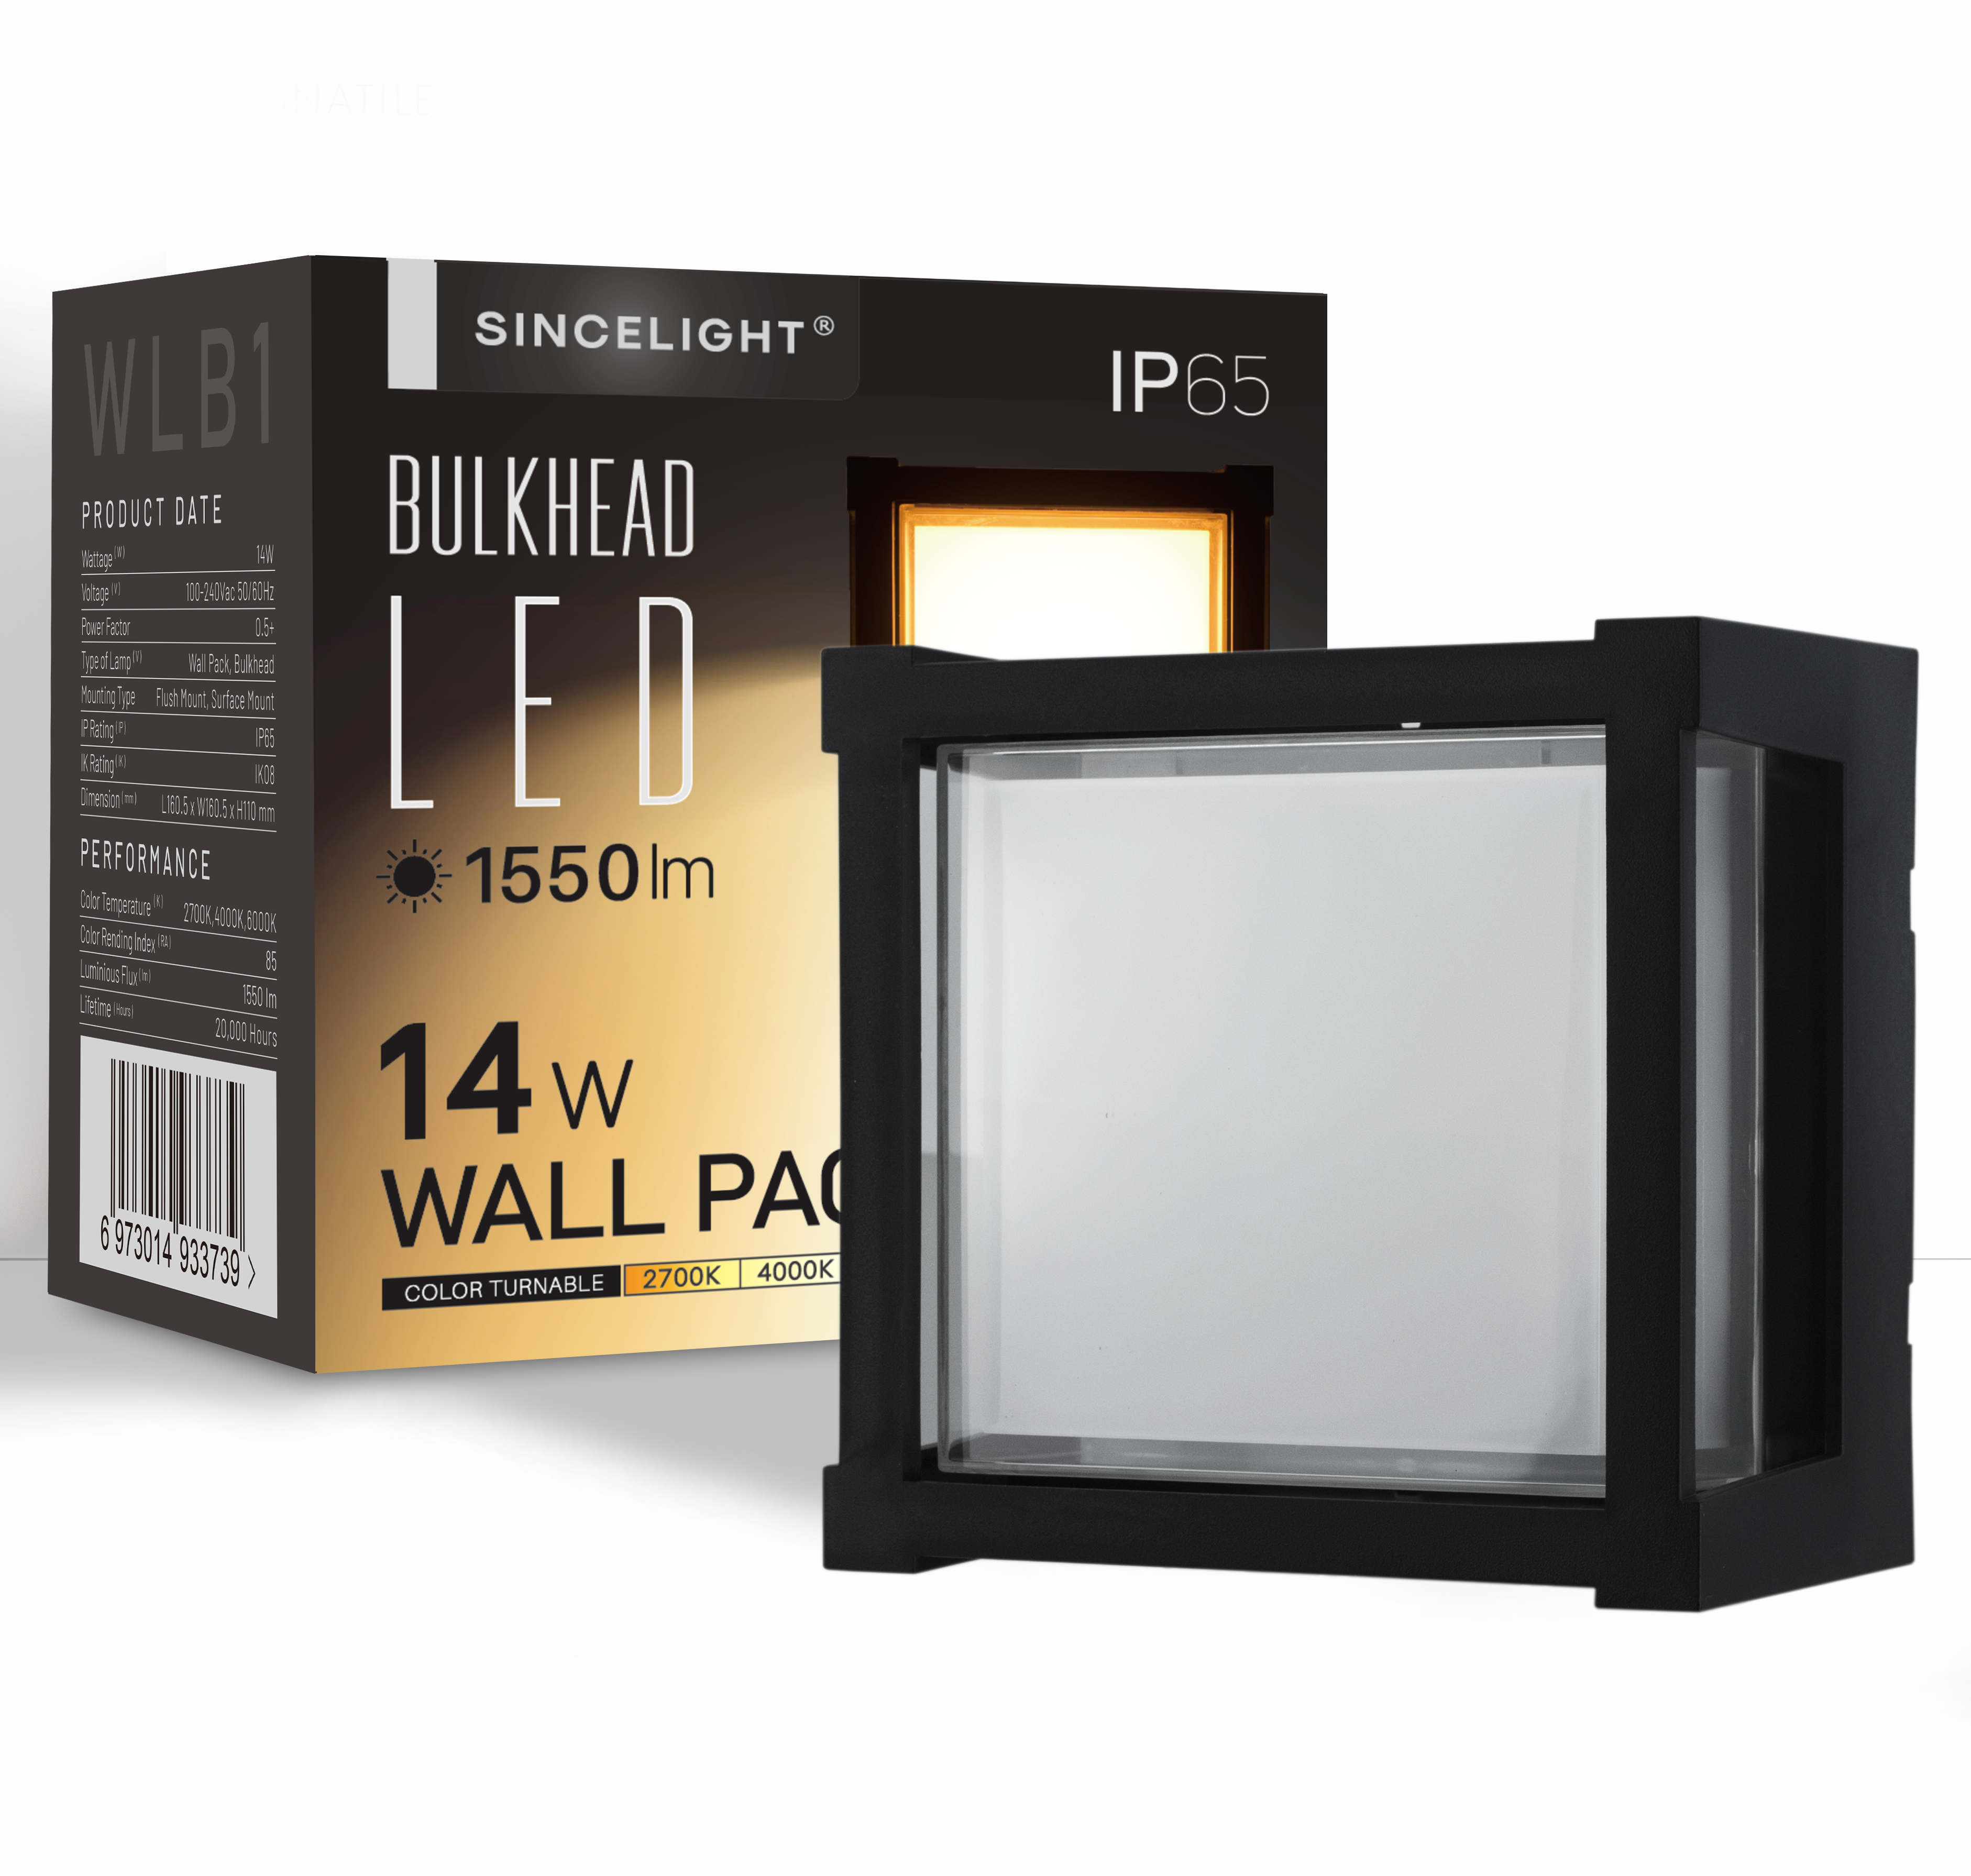 LED Wall Pack Light 14W ( WLB1 Bulkhead )